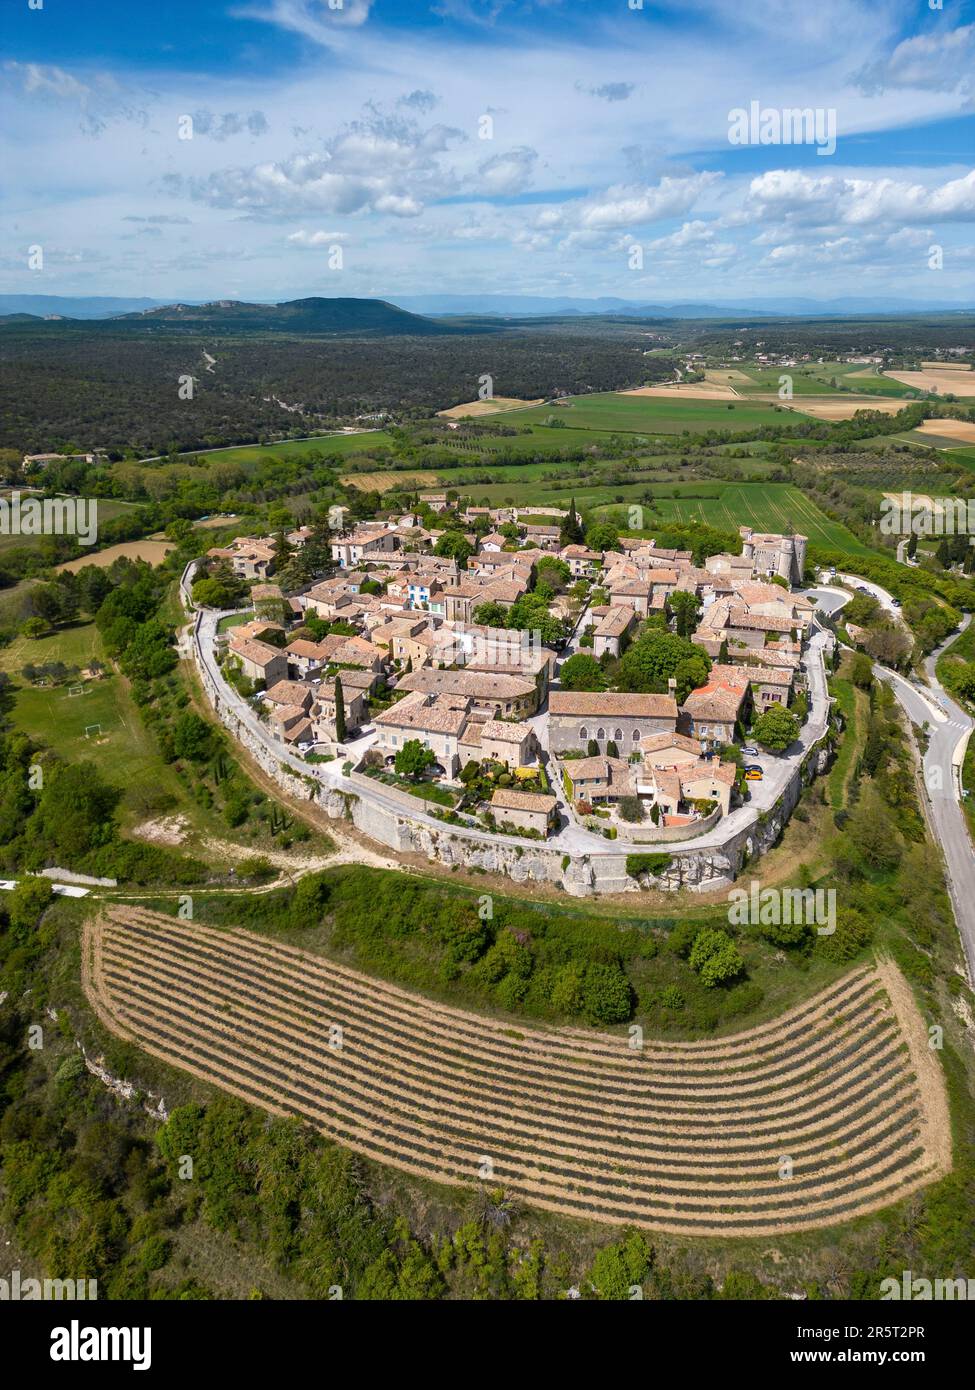 France, Gard, Lussan (village perché), marqué comme l'un des plus beaux villages de France, plantation de lavande en premier plan (vue aérienne) Banque D'Images